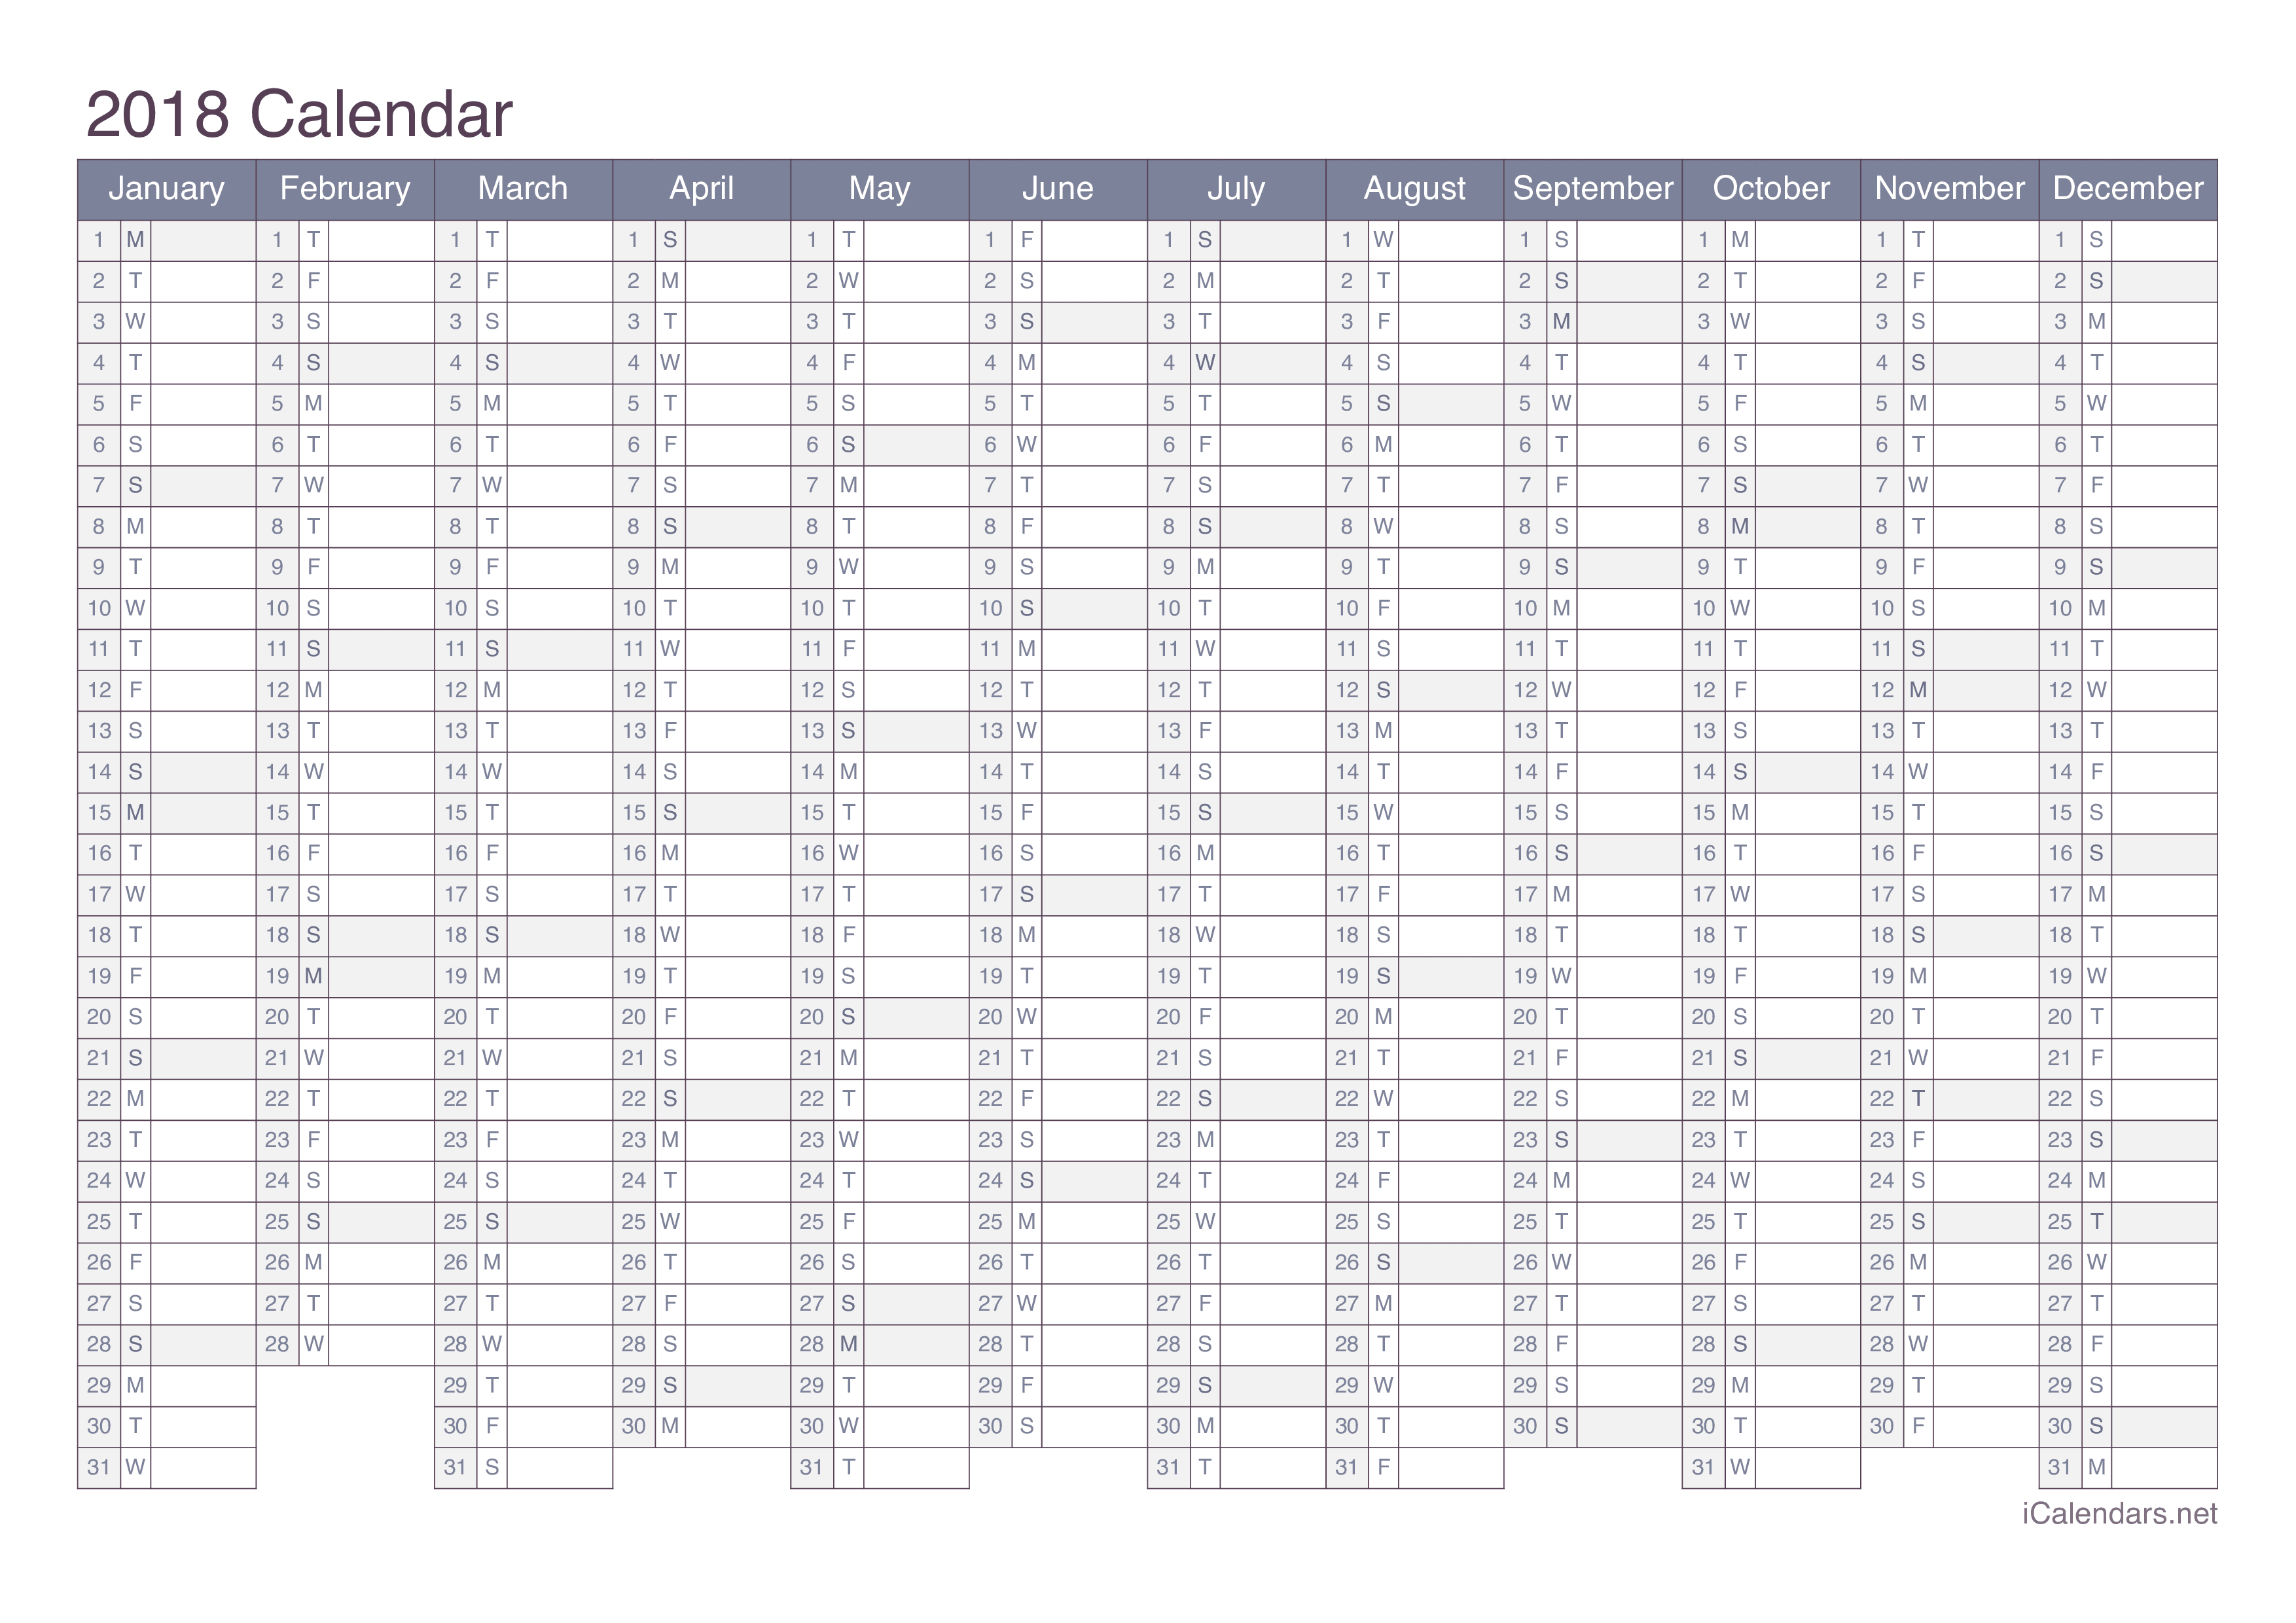 2018 Calendar - Office